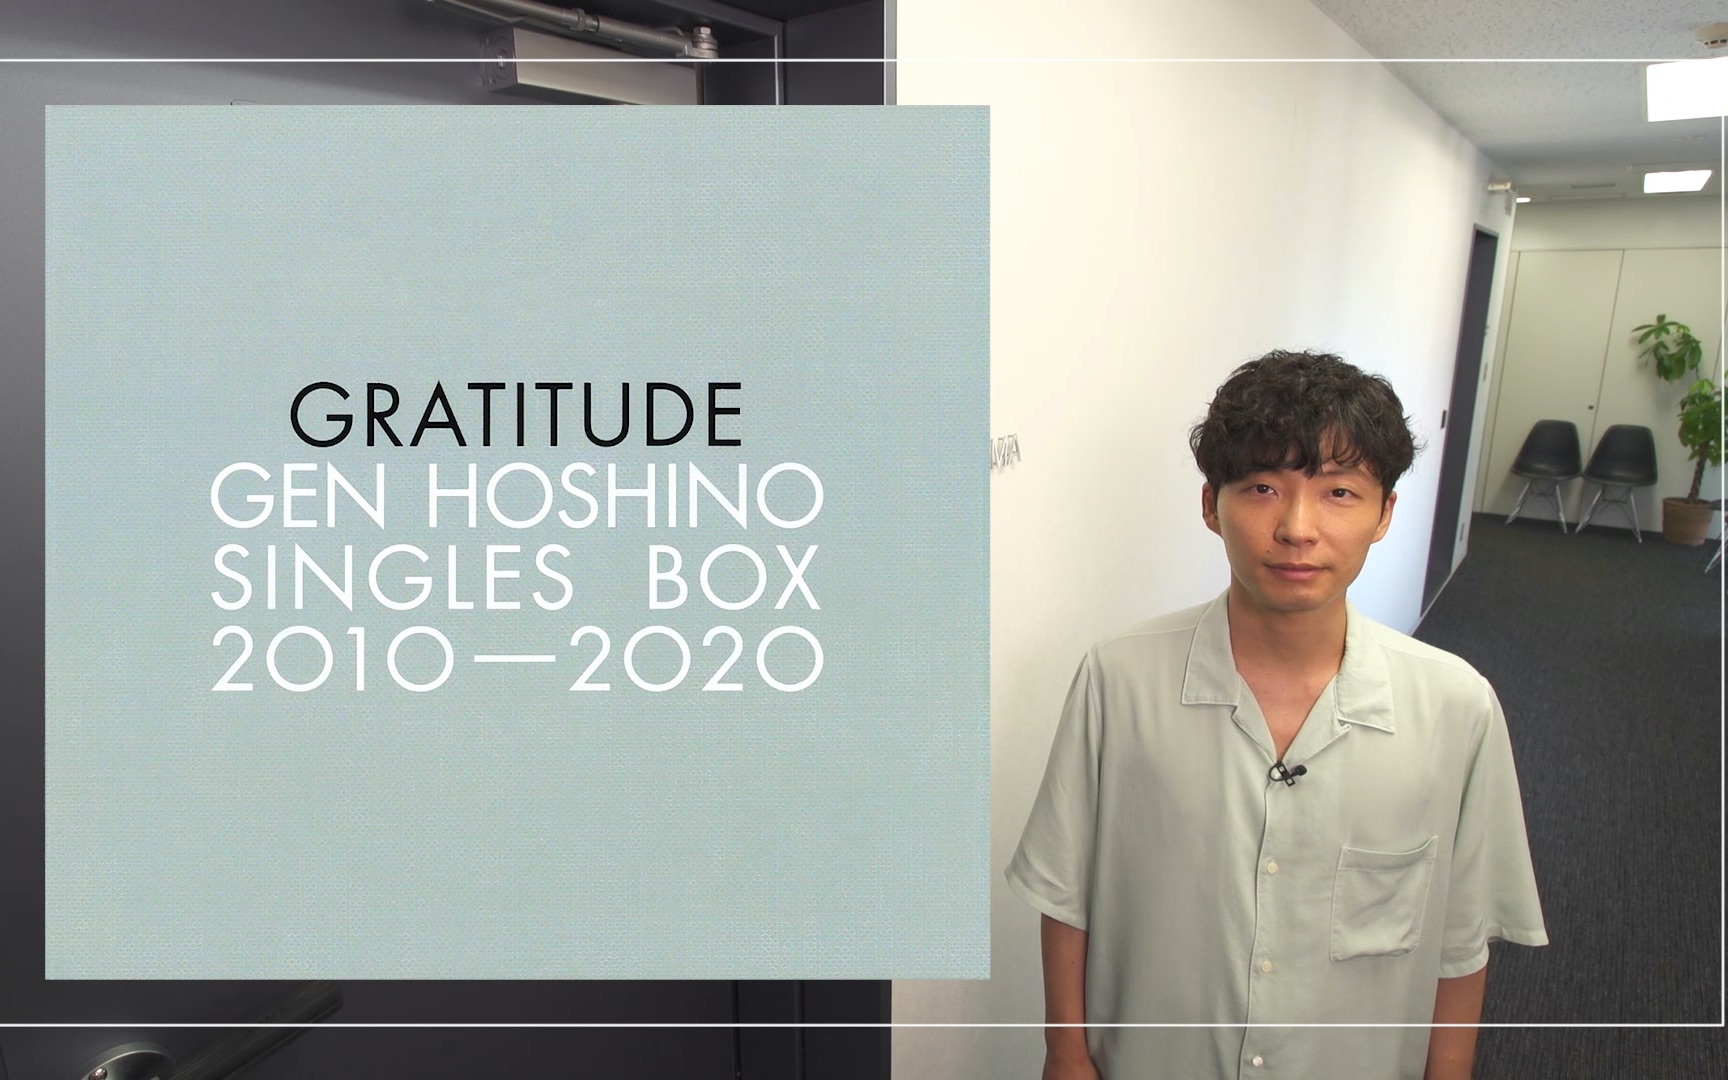 官方】星野源- Gen Hoshino Singles Box “GRATITUDE” (Official Trailer)_哔哩哔哩_bilibili